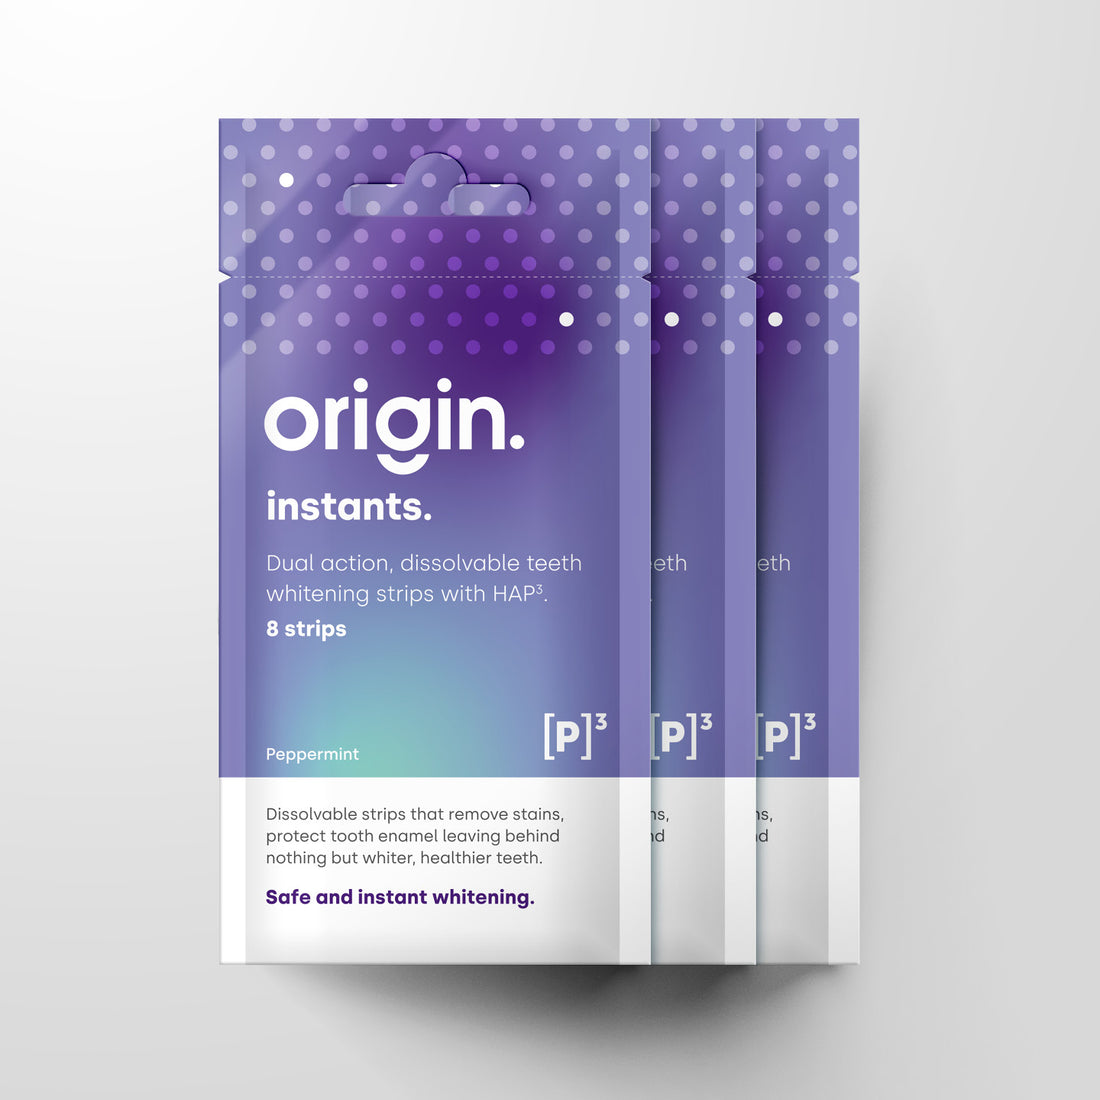 Origin instants 3 pack bundle